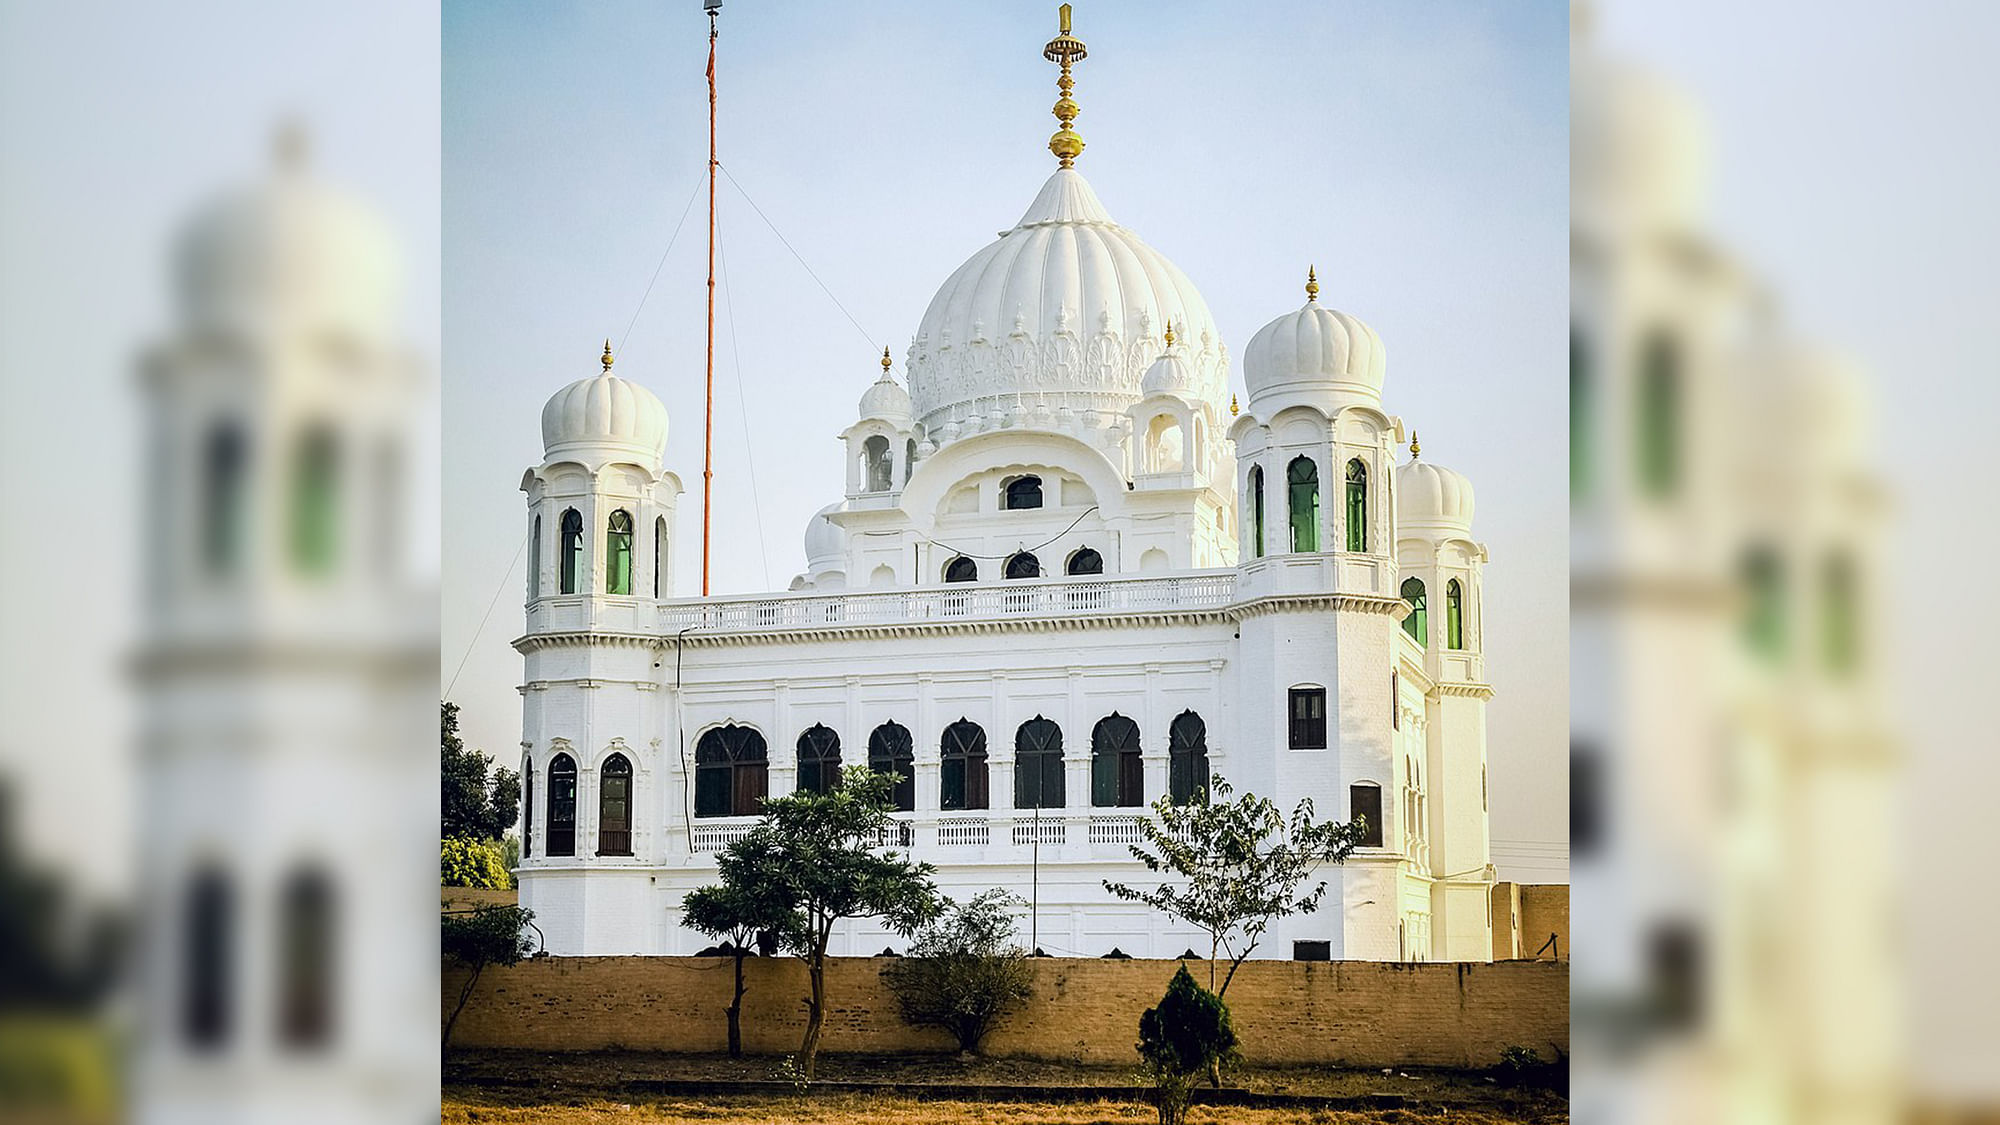 Gurdwara Darbar Sahib